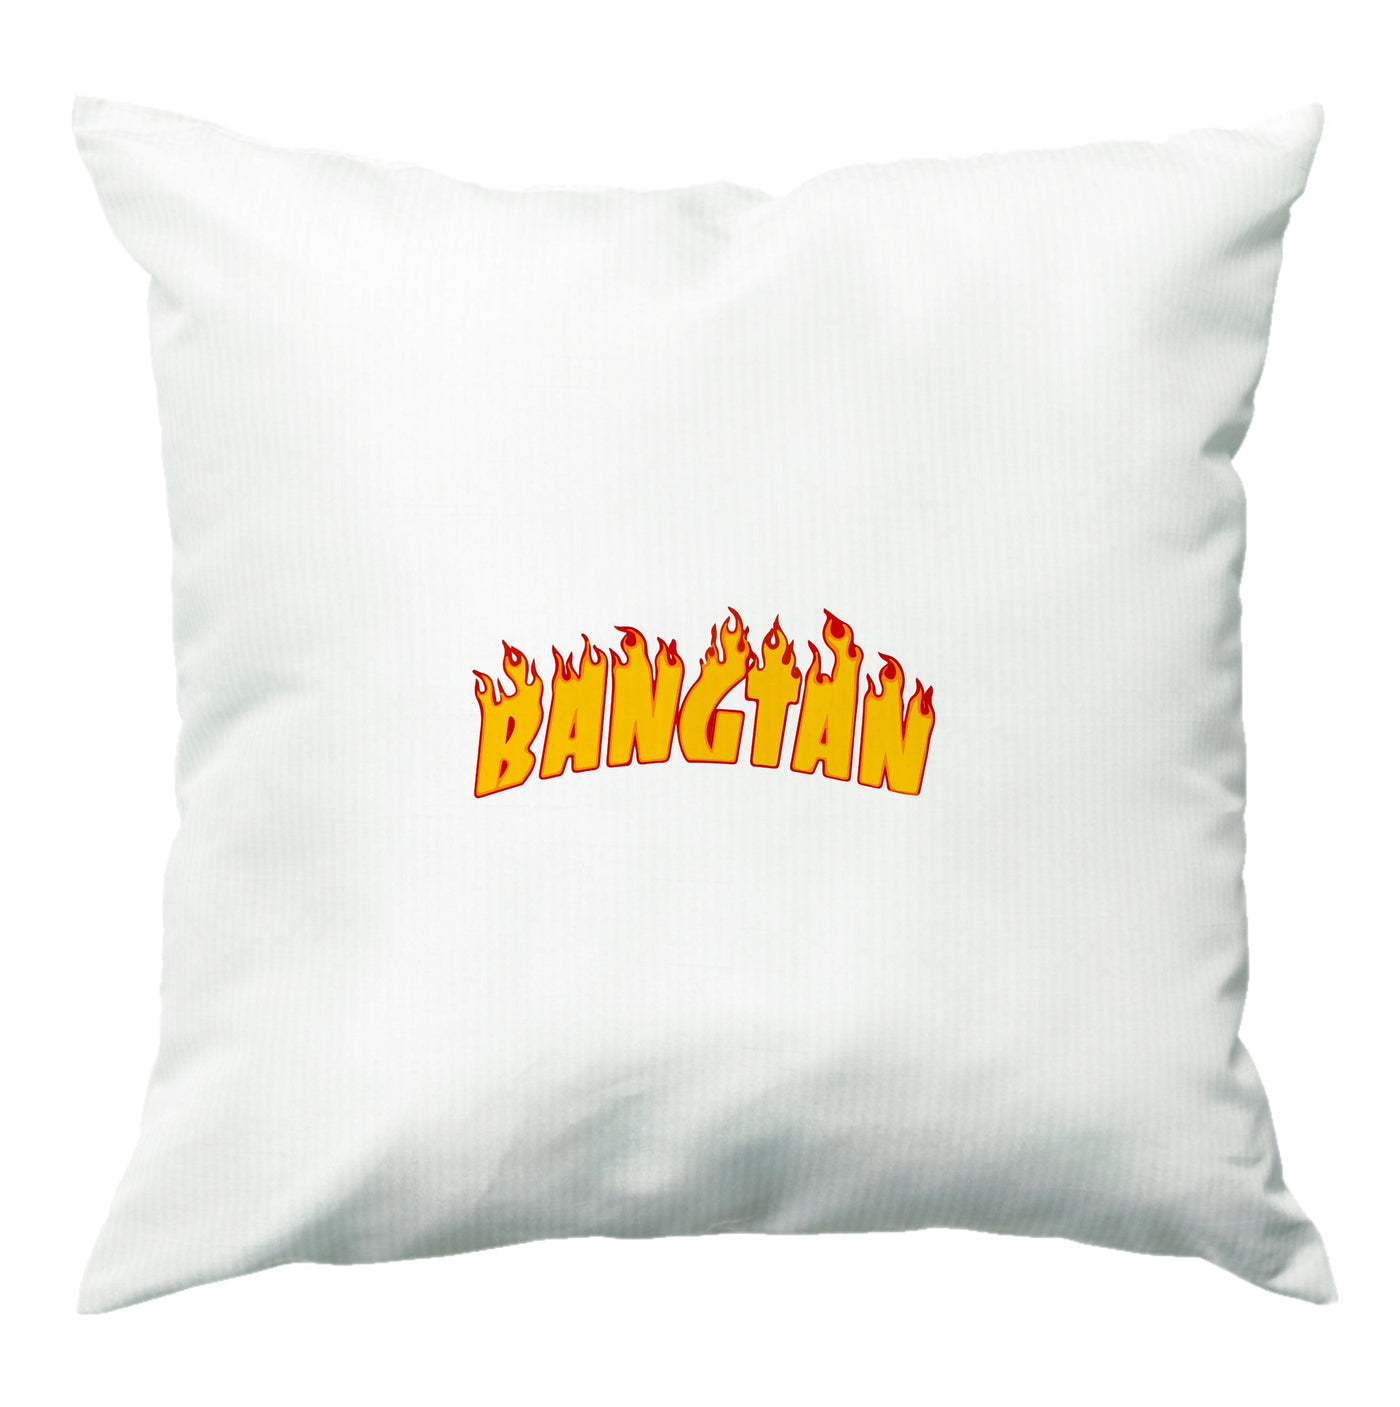 Bangtan Flames - BTS Cushion